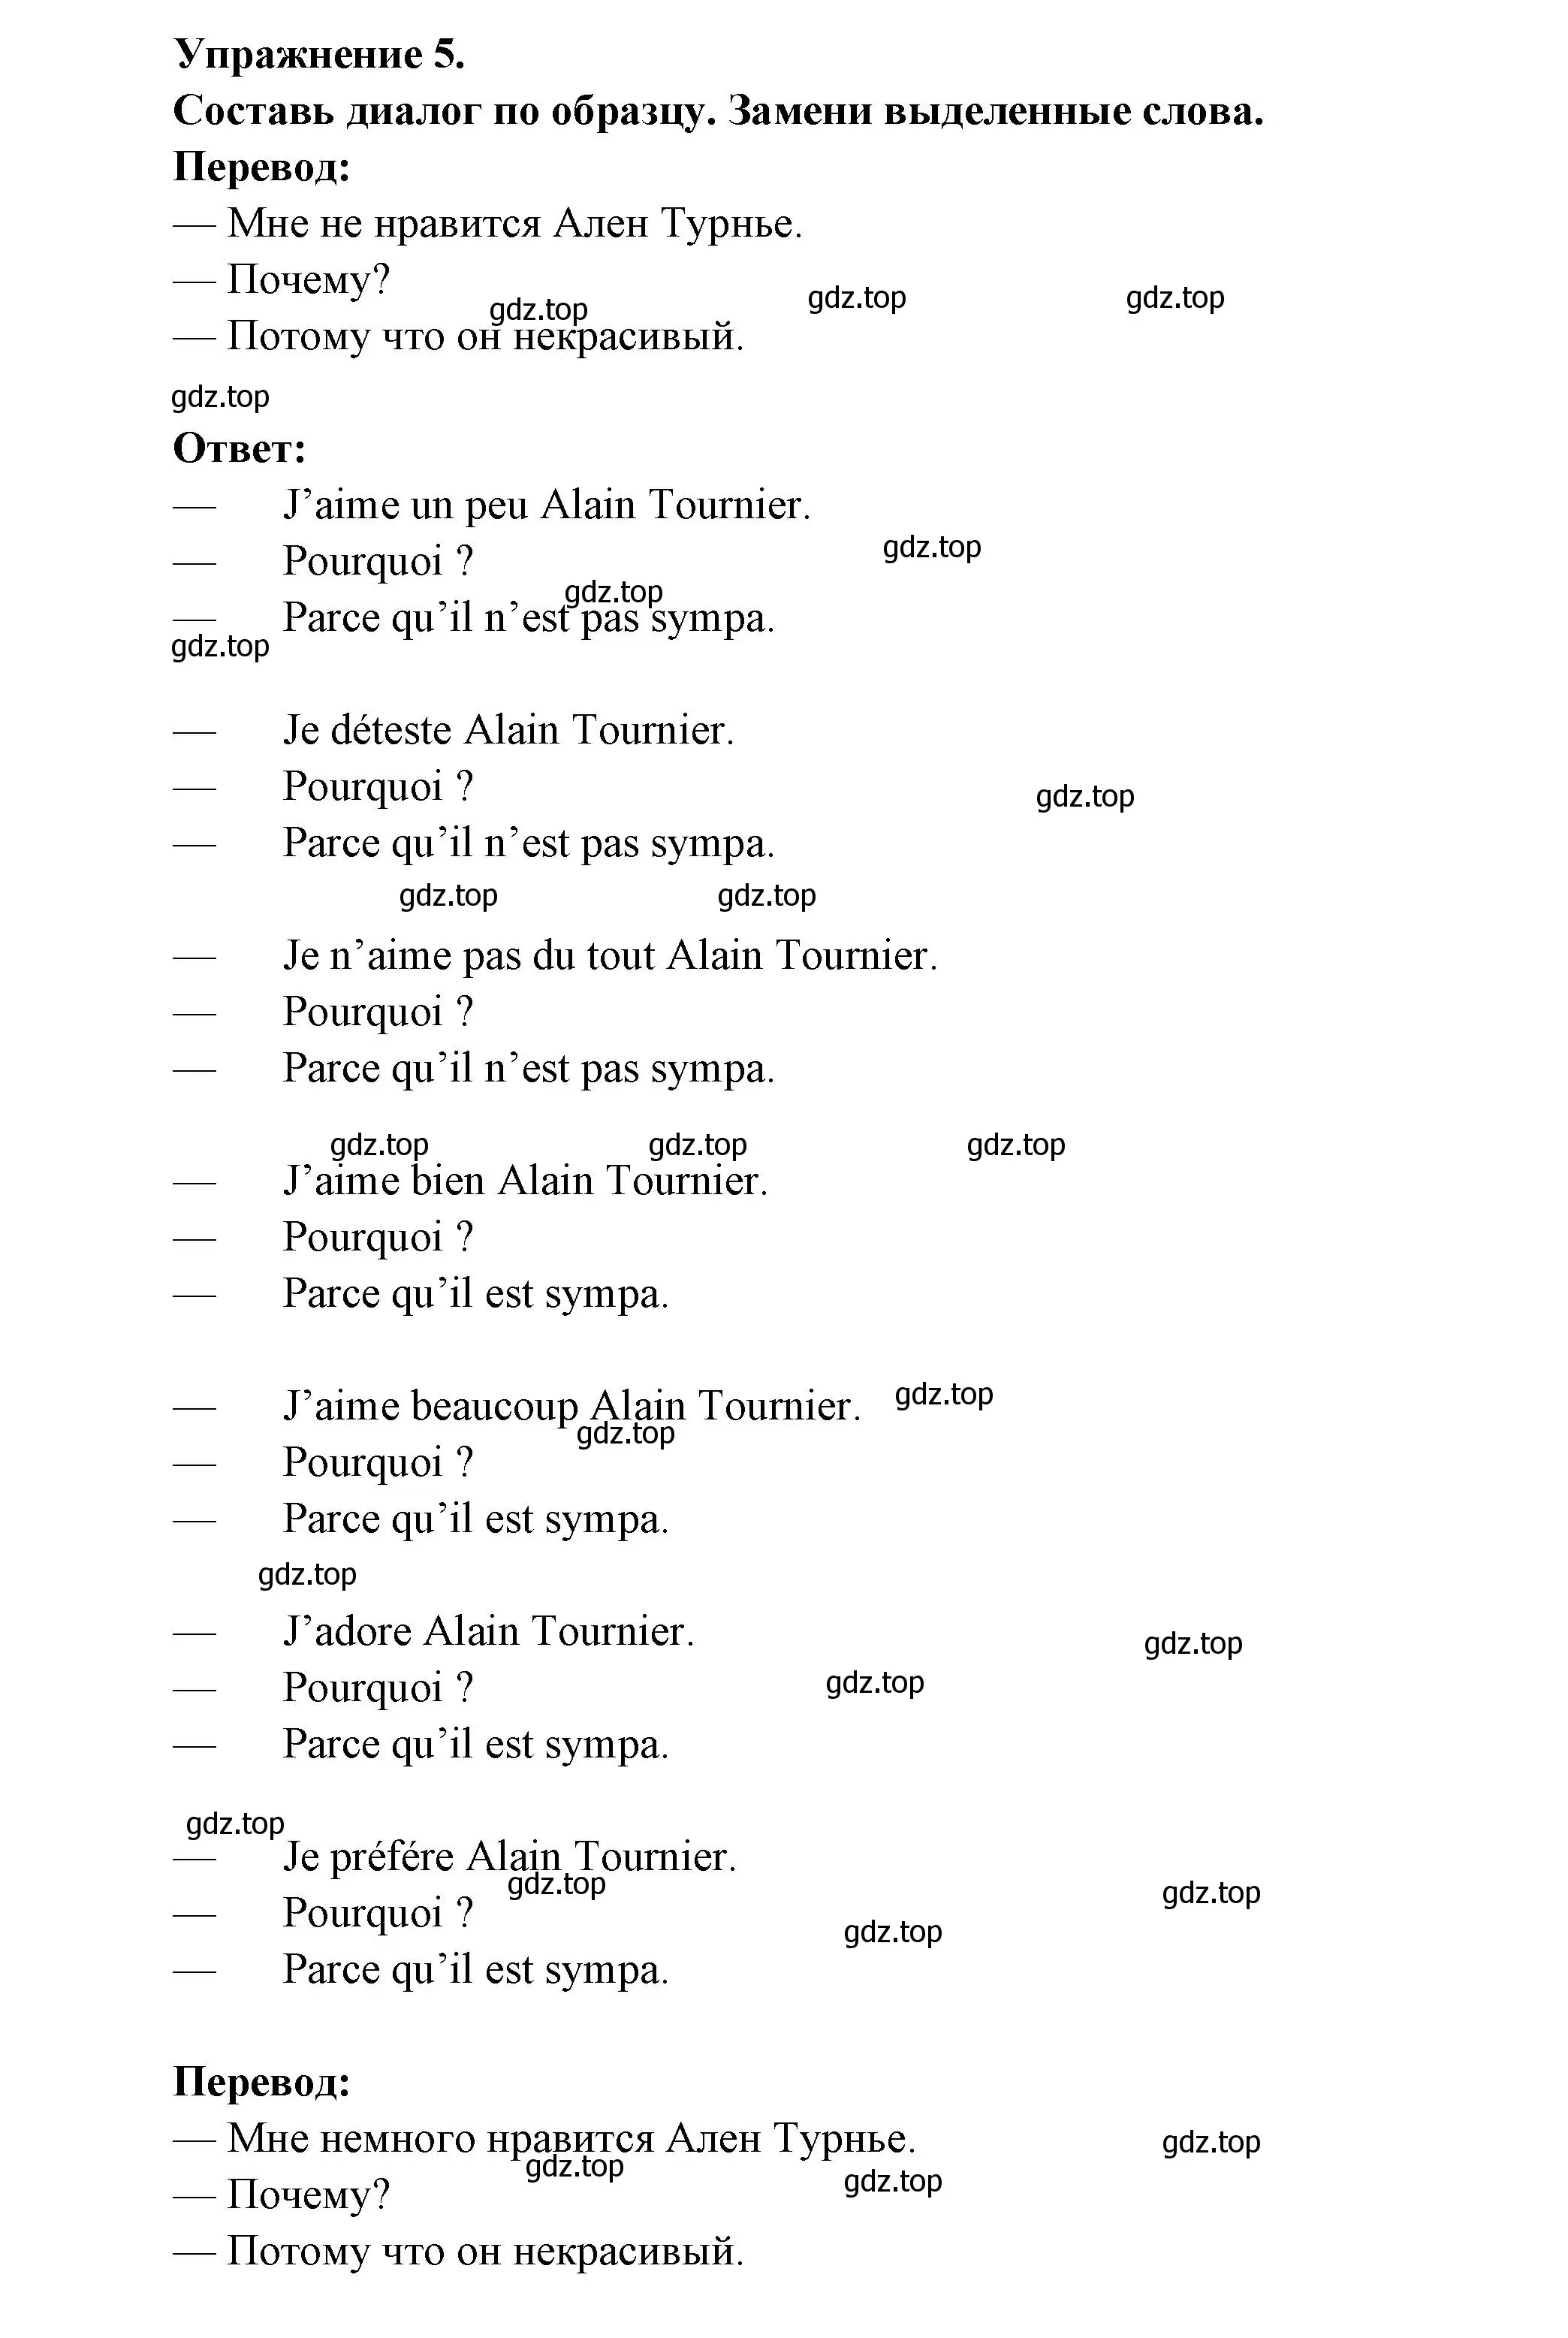 Решение номер 5 (страница 70) гдз по французскому языку 5 класс Береговская, Белосельская, учебник 2 часть